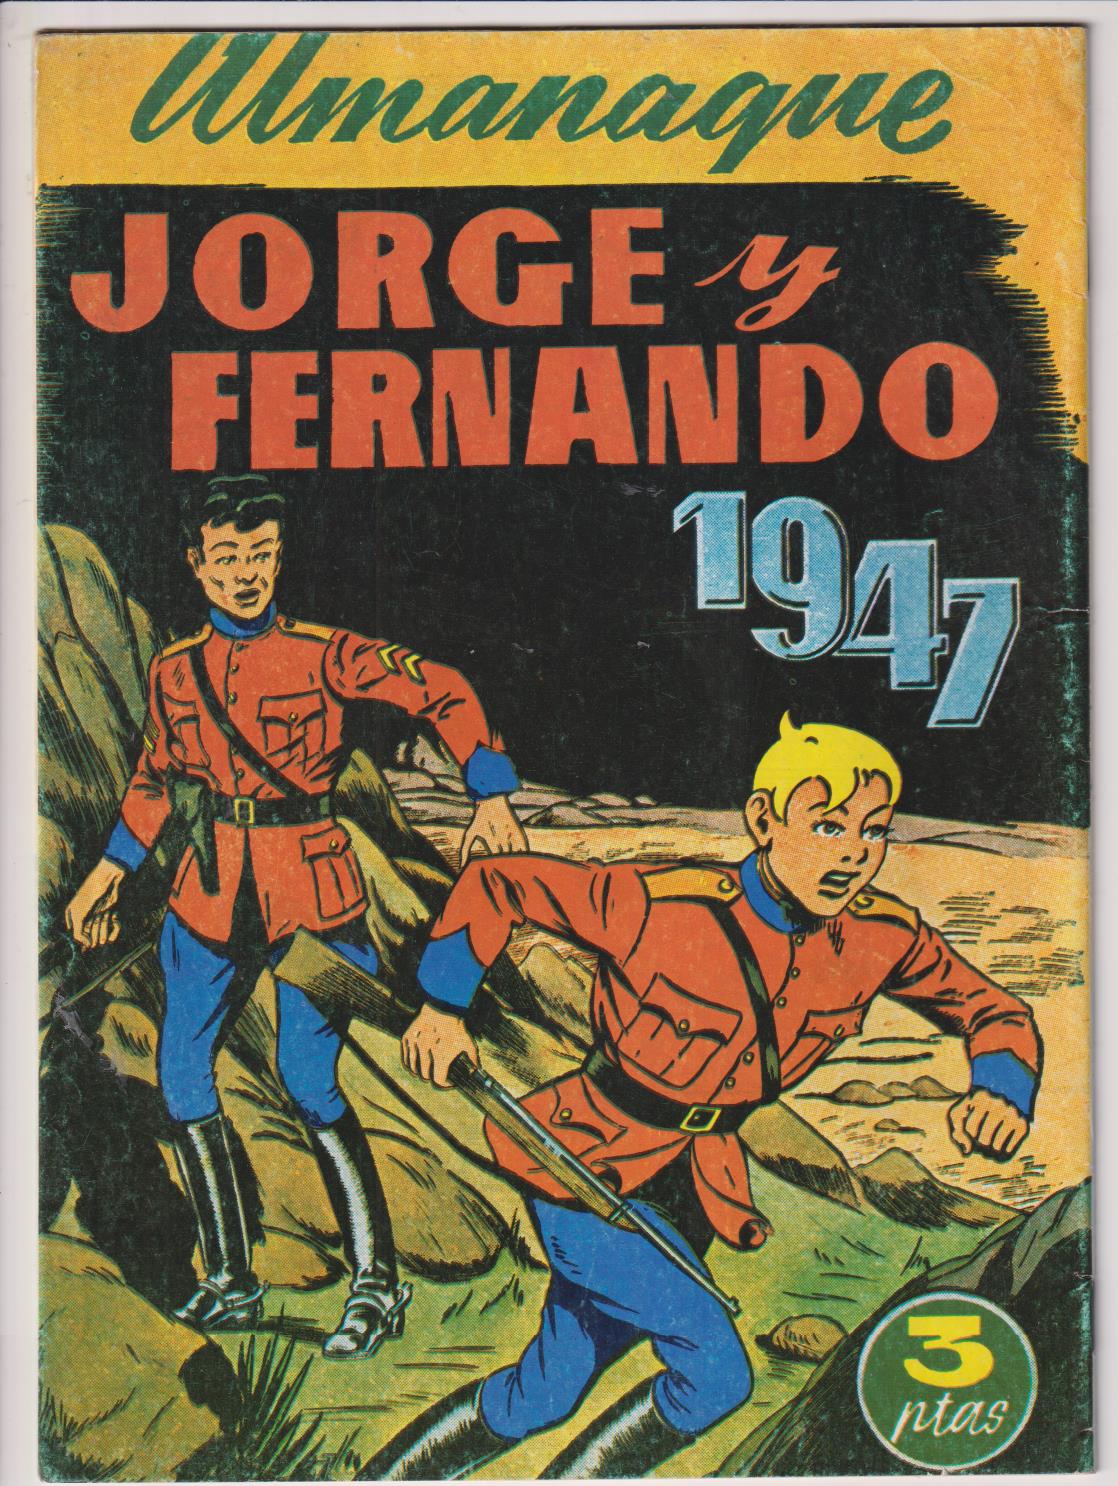 Almanaque juan Centella. Jorge y Fernando 1947. Reedición